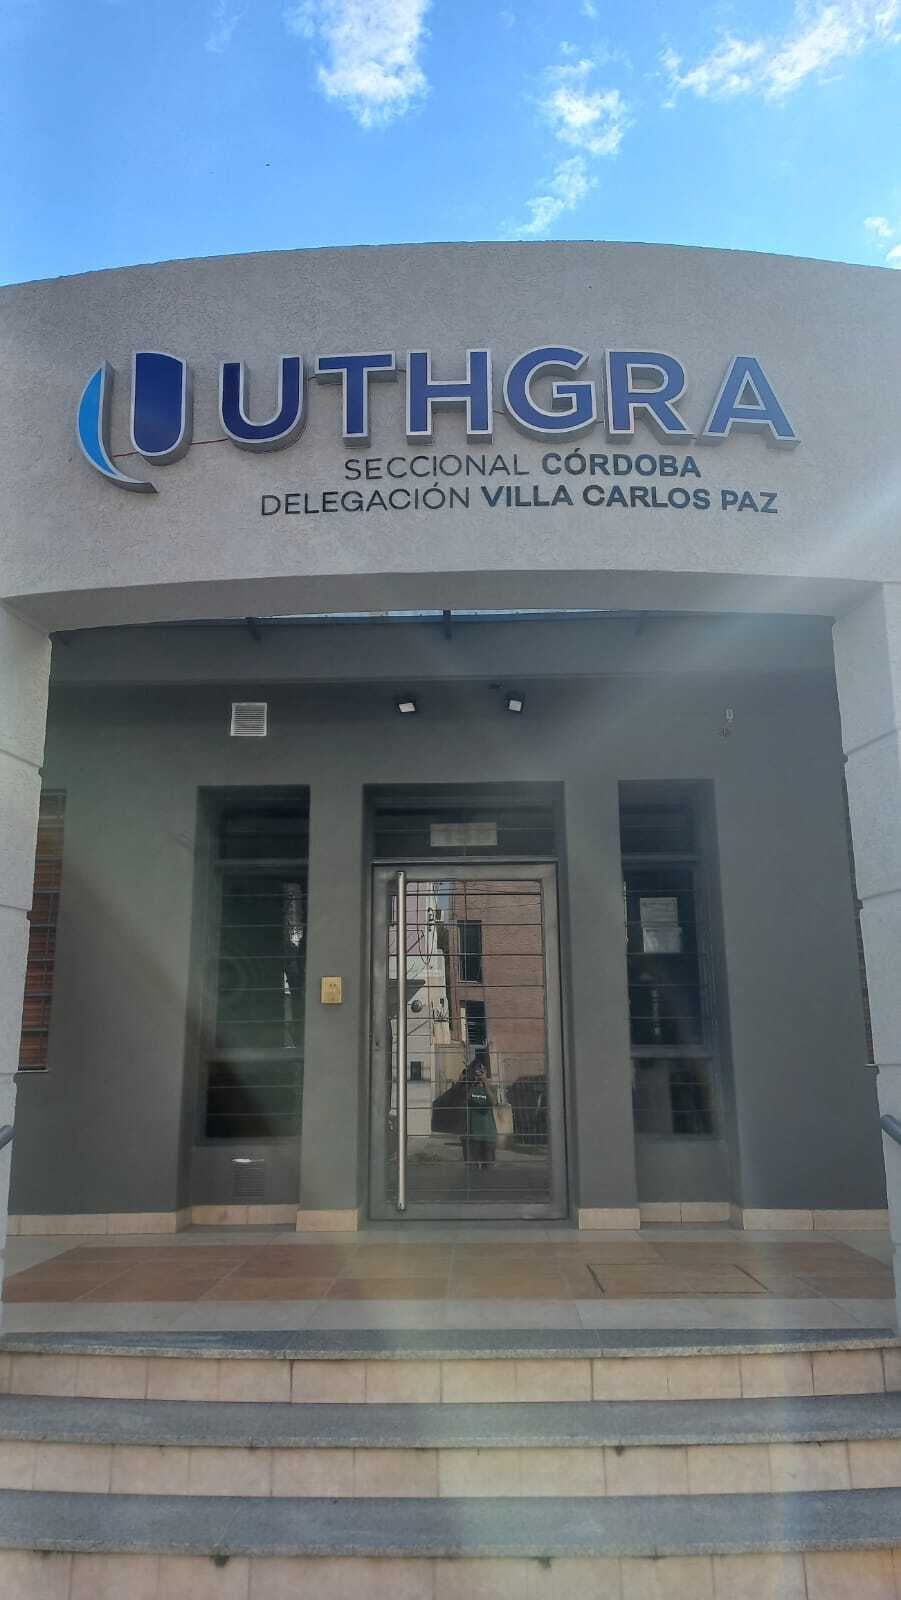 Obras en la Delegación UTHGRA Córdoba Villa Carlos Paz